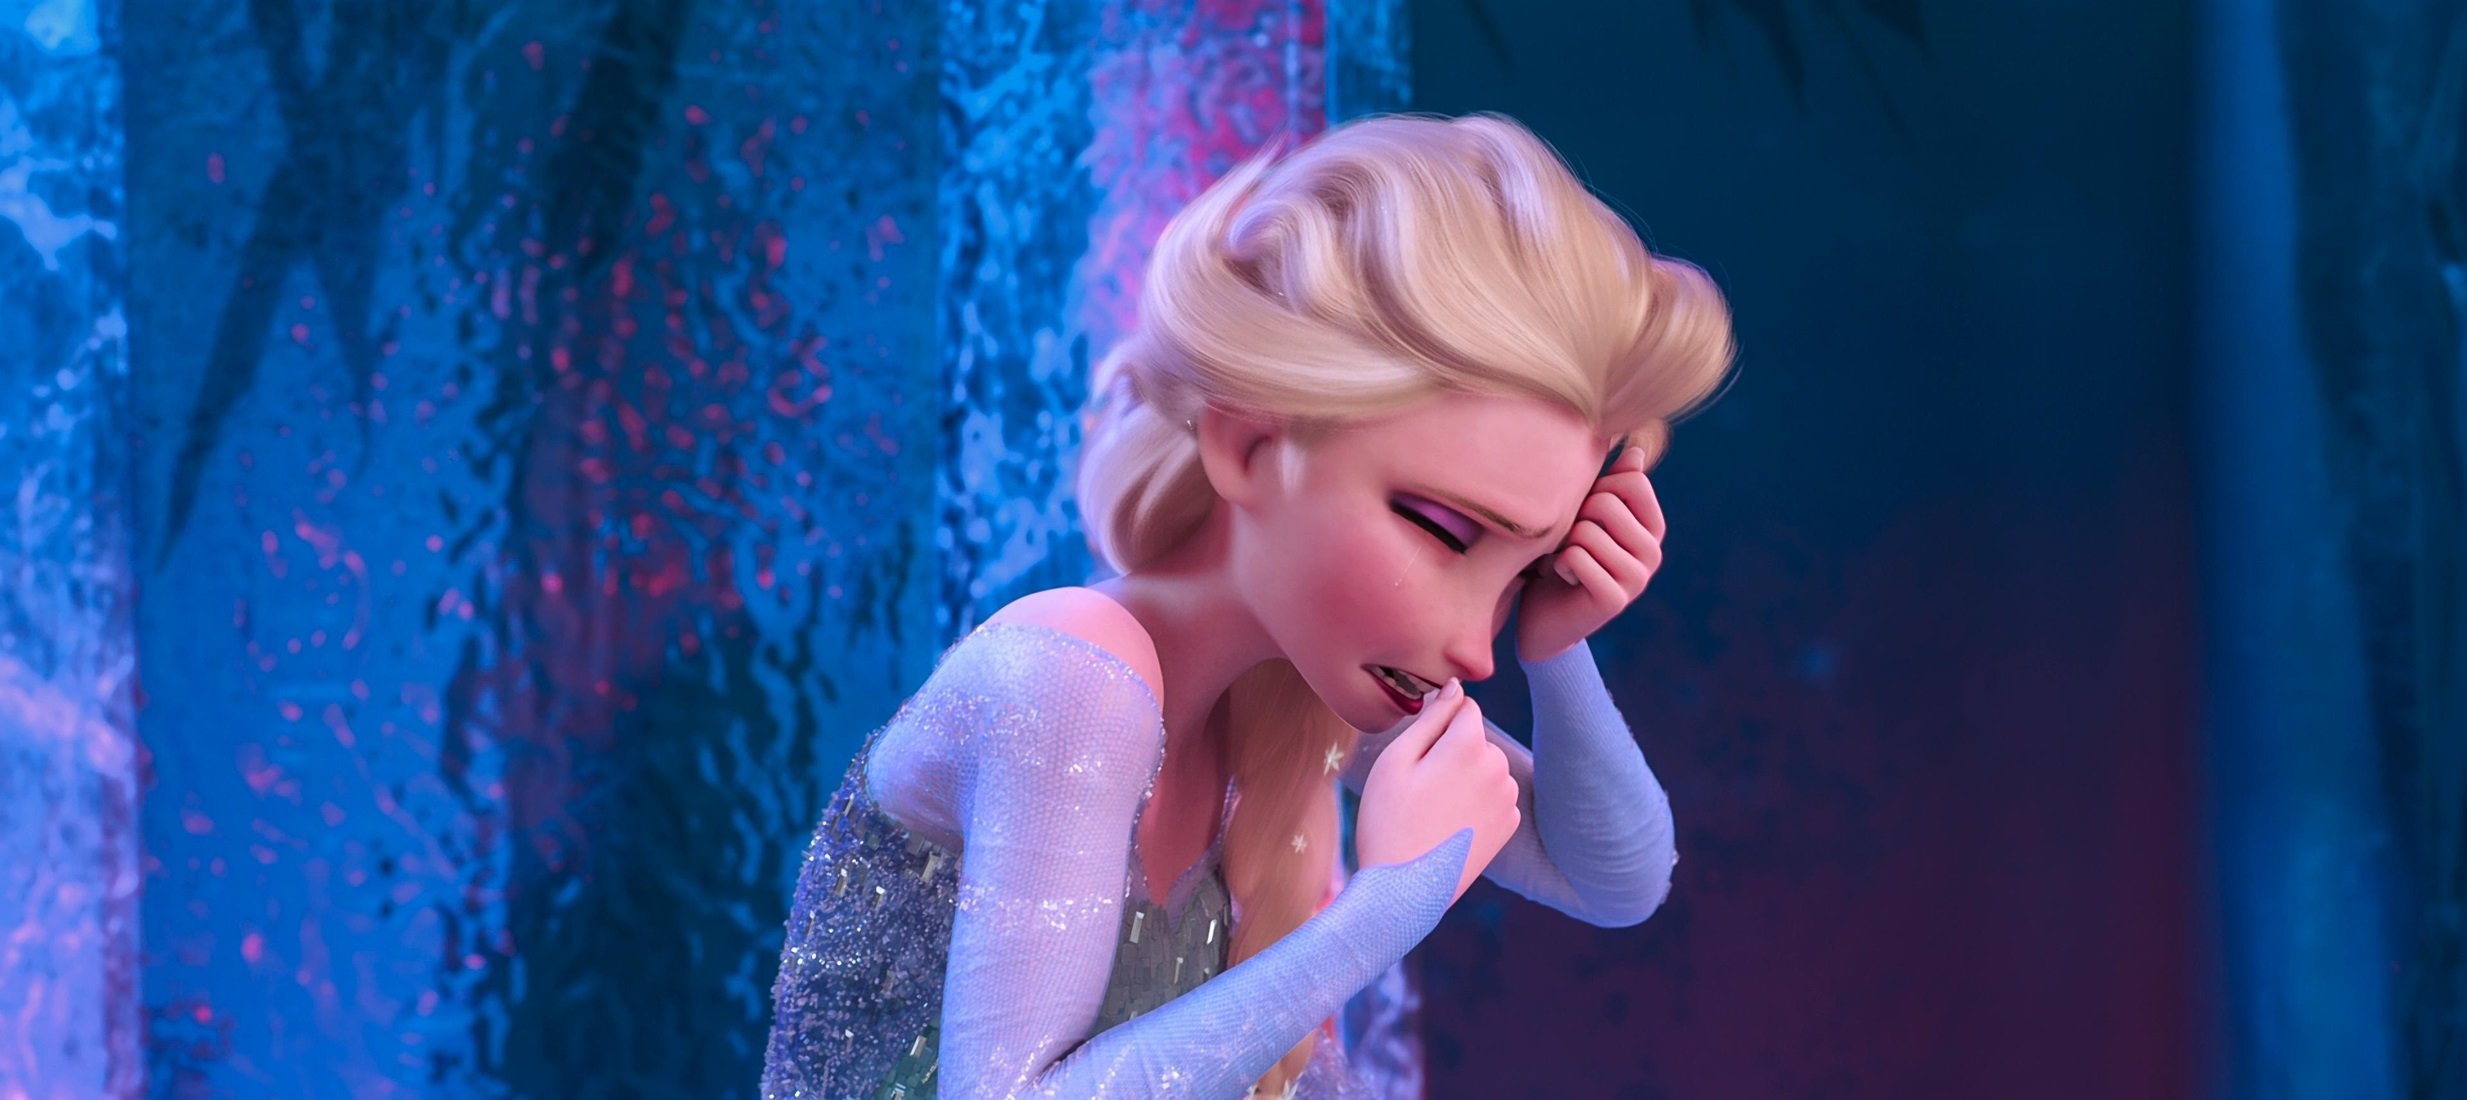 Telecinco traumatiza a miles de niños cortando 'Frozen' por la mitad